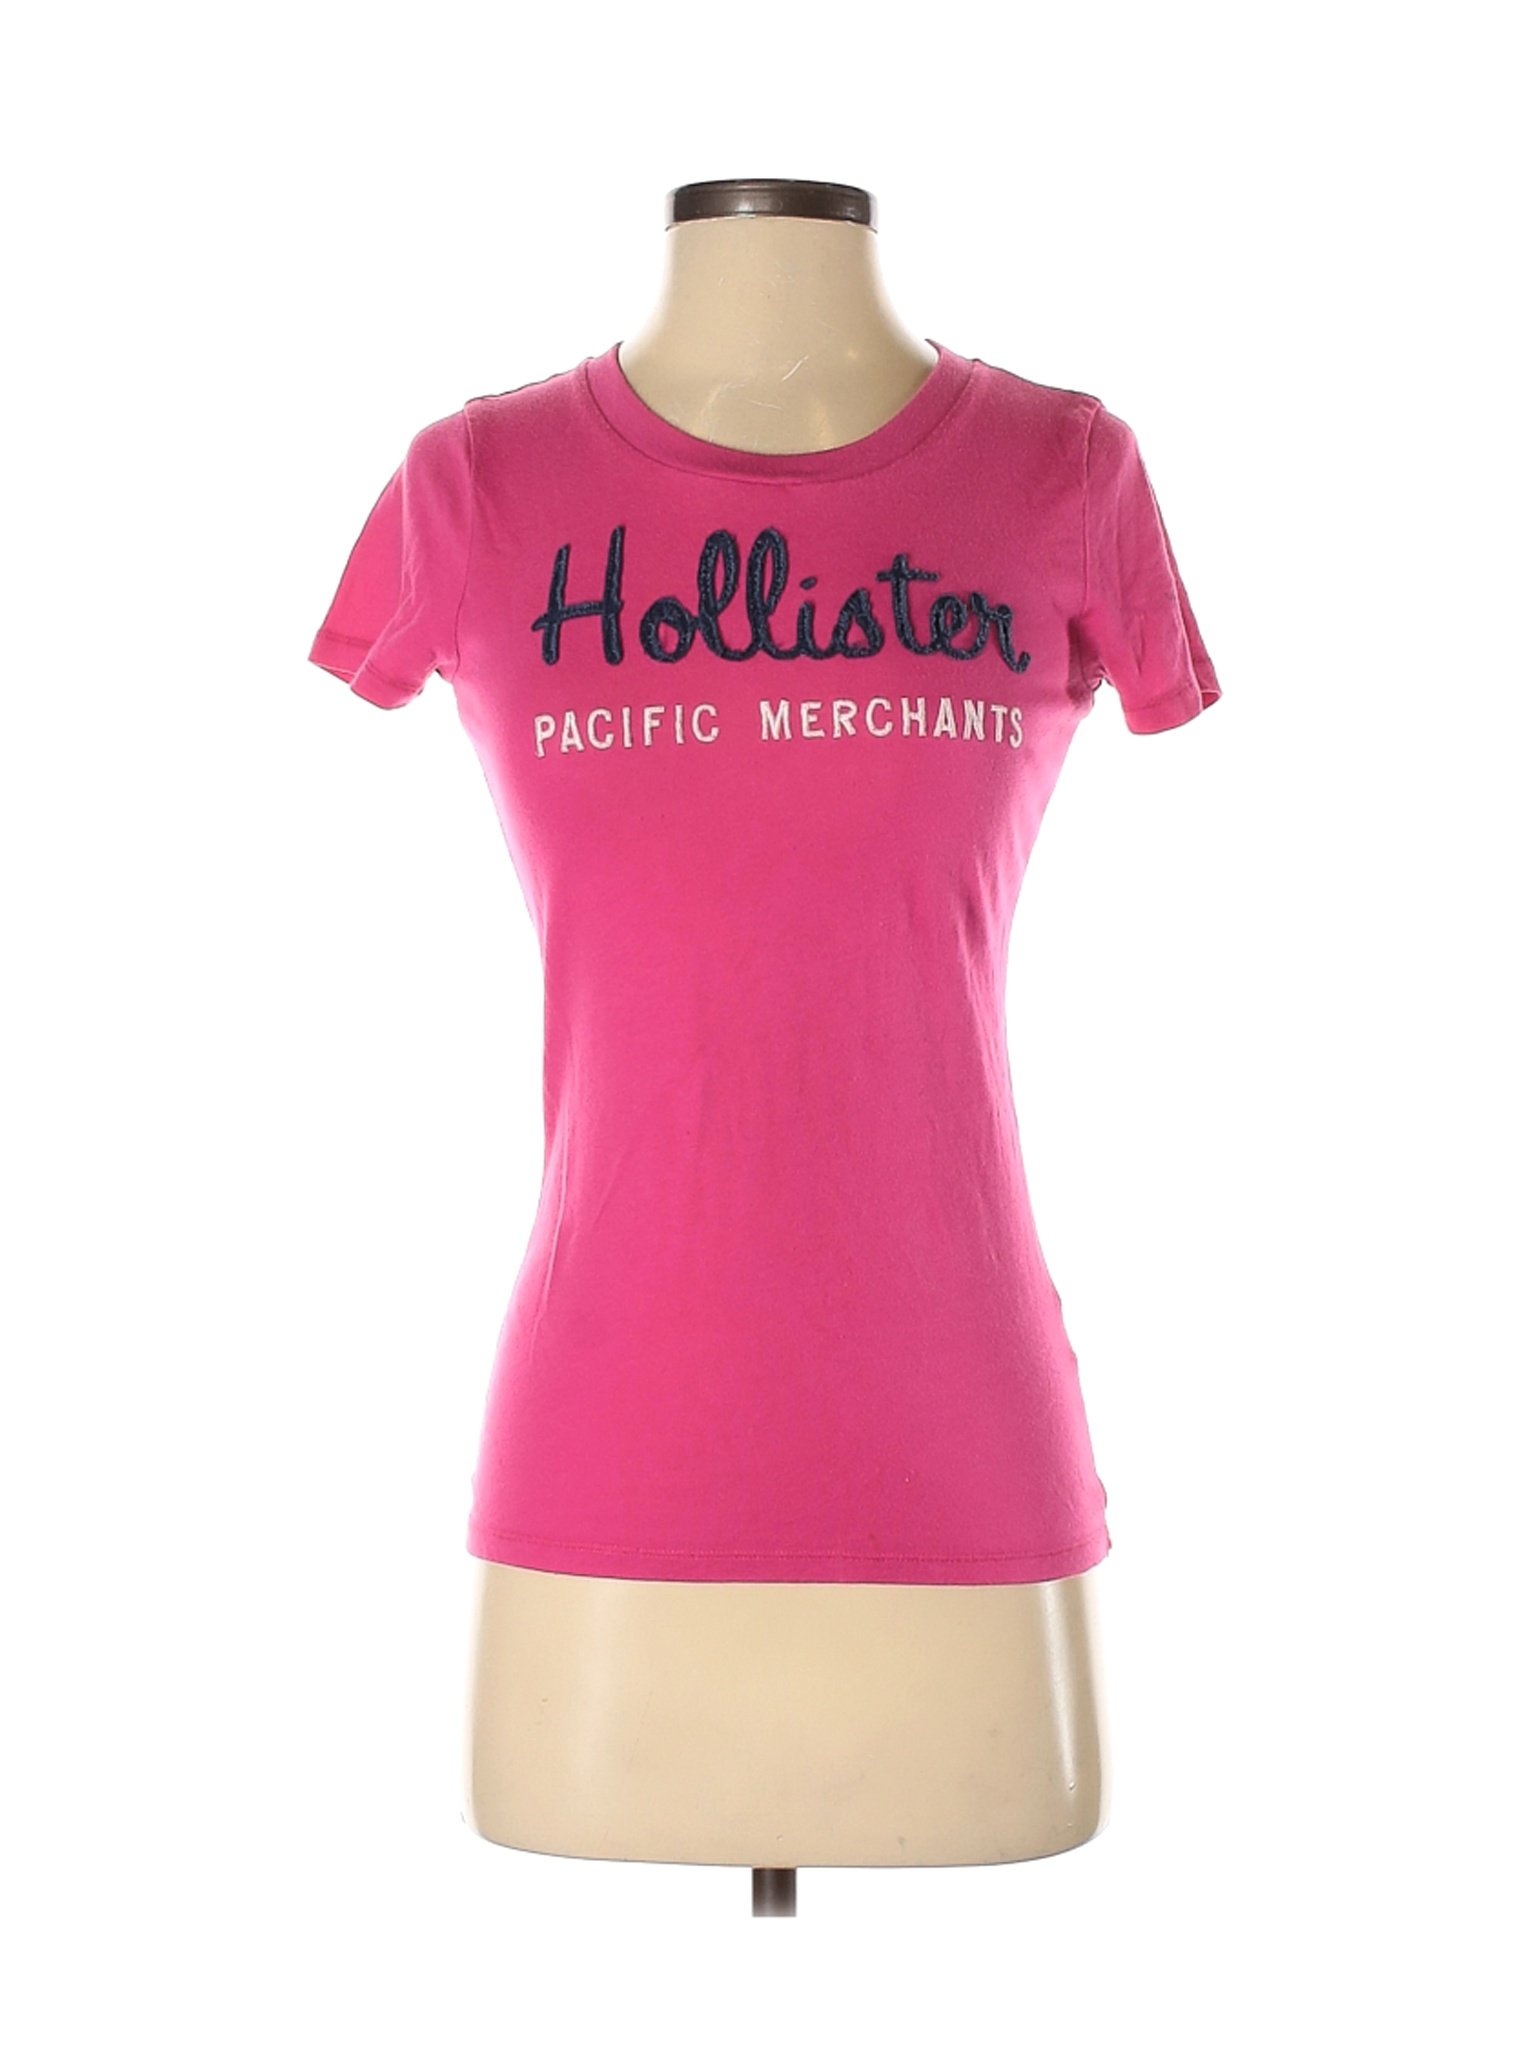 Hollister Women Pink Short Sleeve T-Shirt S | eBay